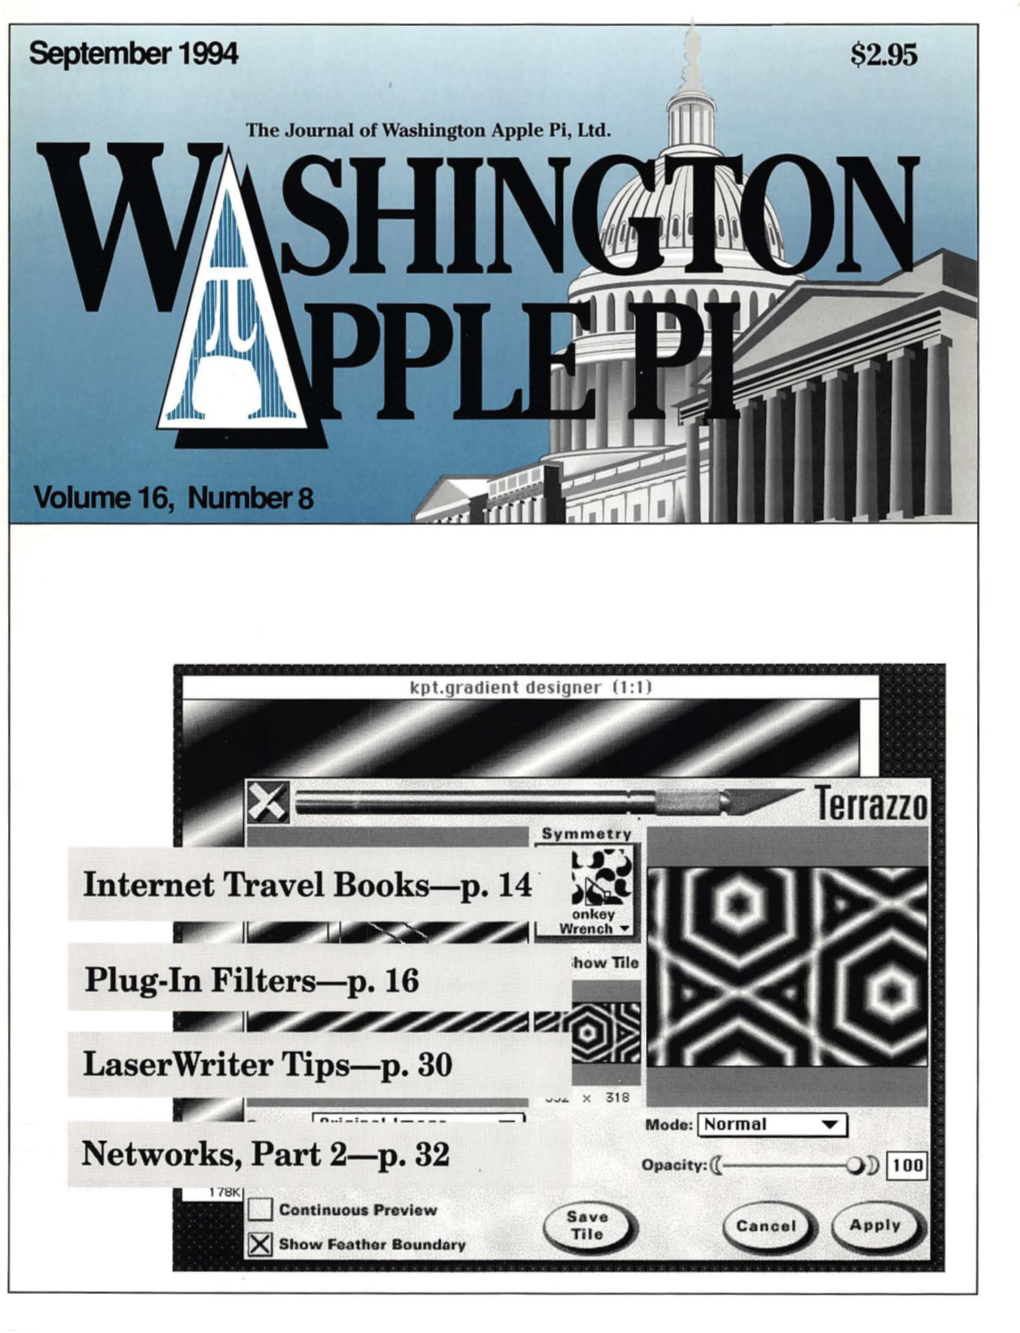 Washington Apple Pi Journal, September 1994